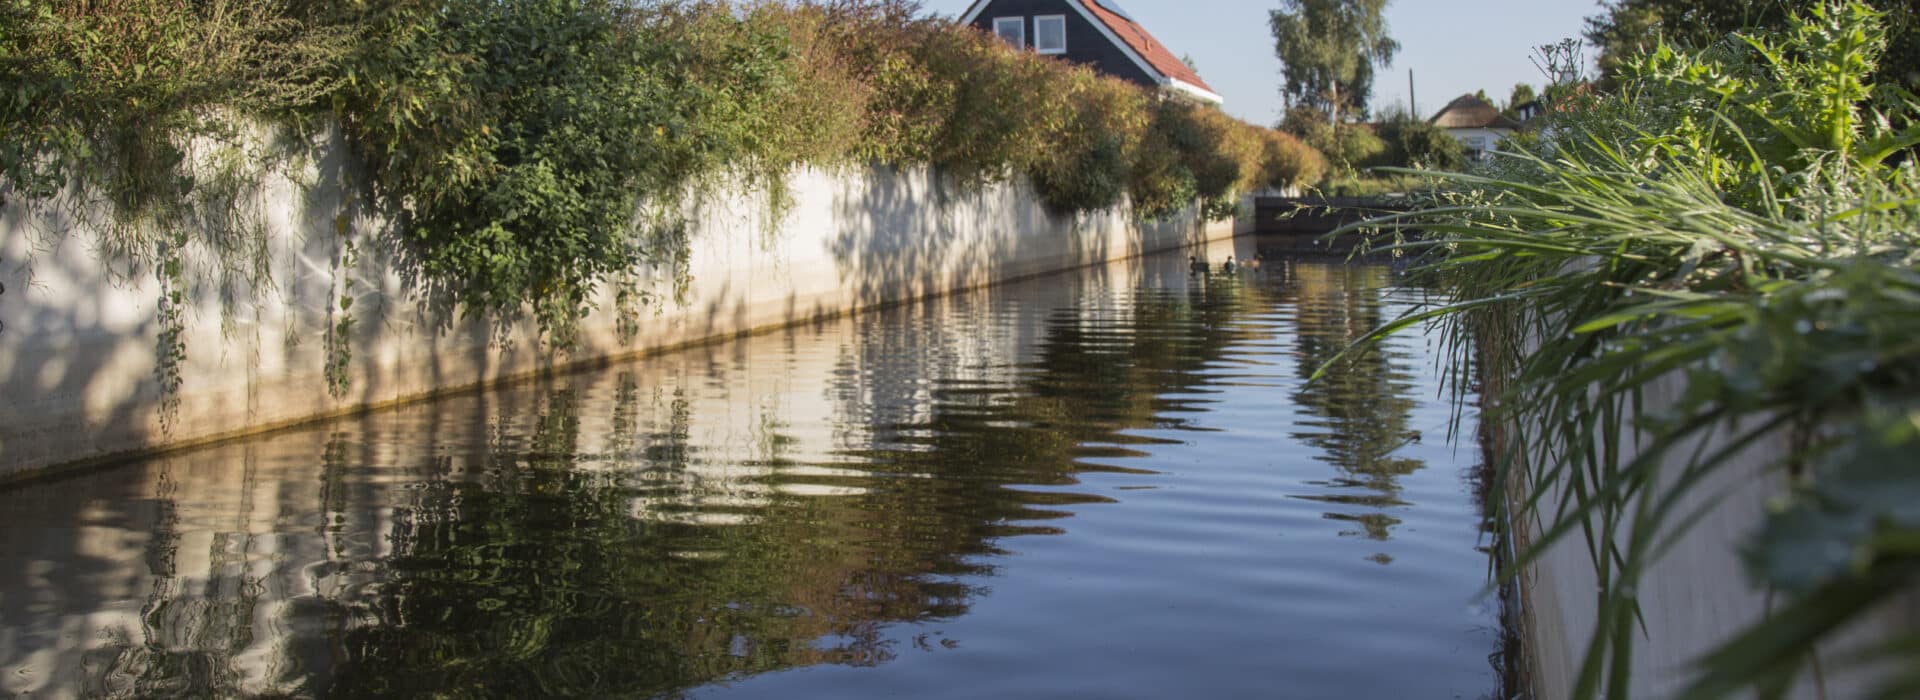 Bosch Beton - Duurzame waterkering in nieuwbouwwijk Nijkerkerveen